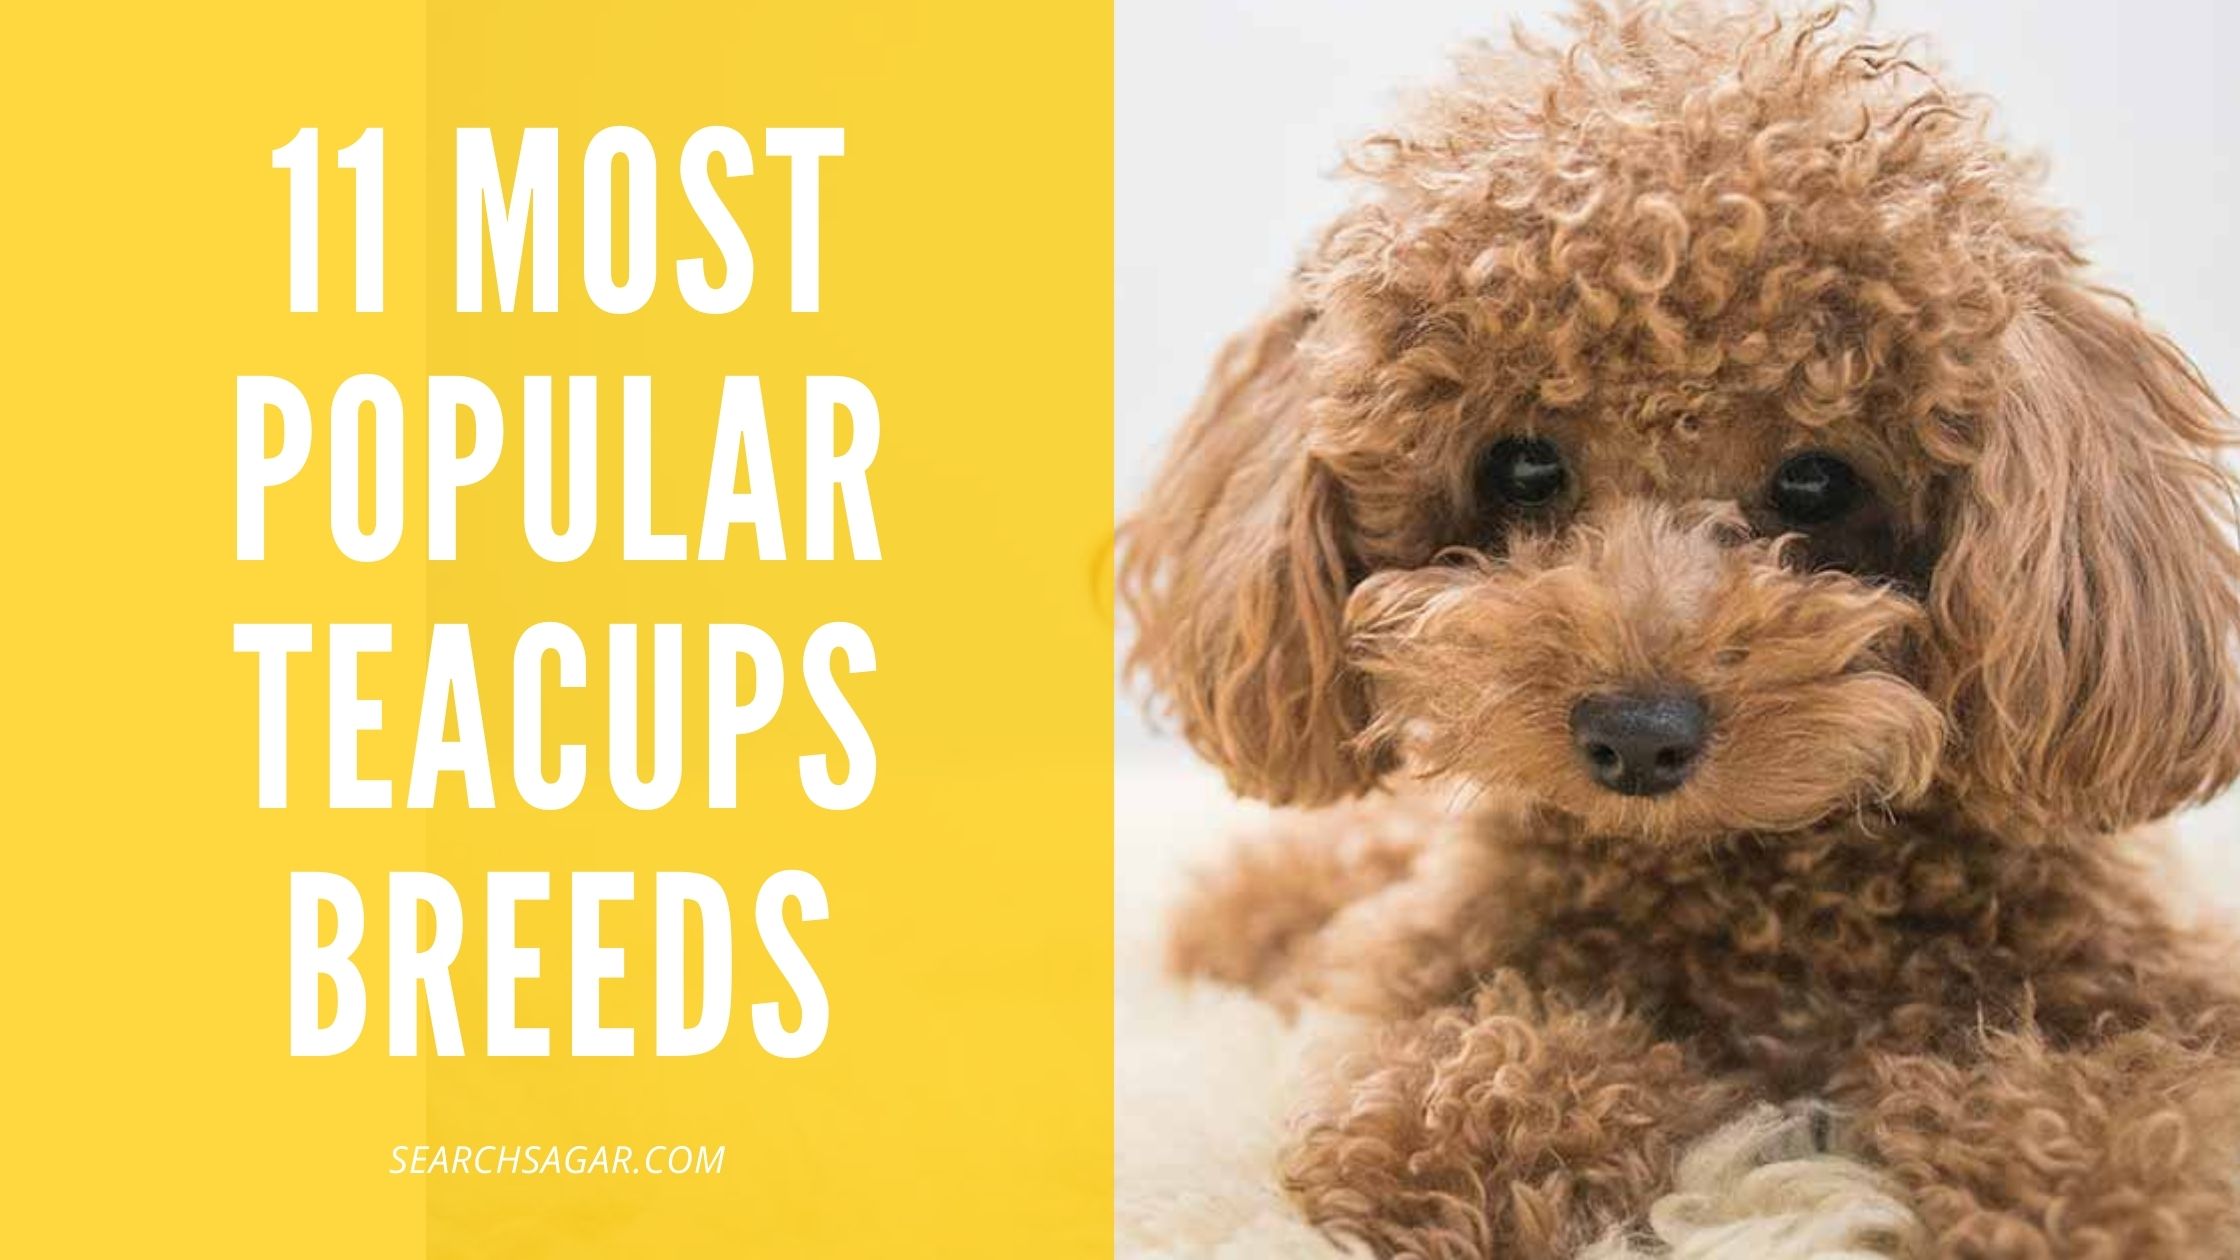 11 Most Popular Teacups Breeds